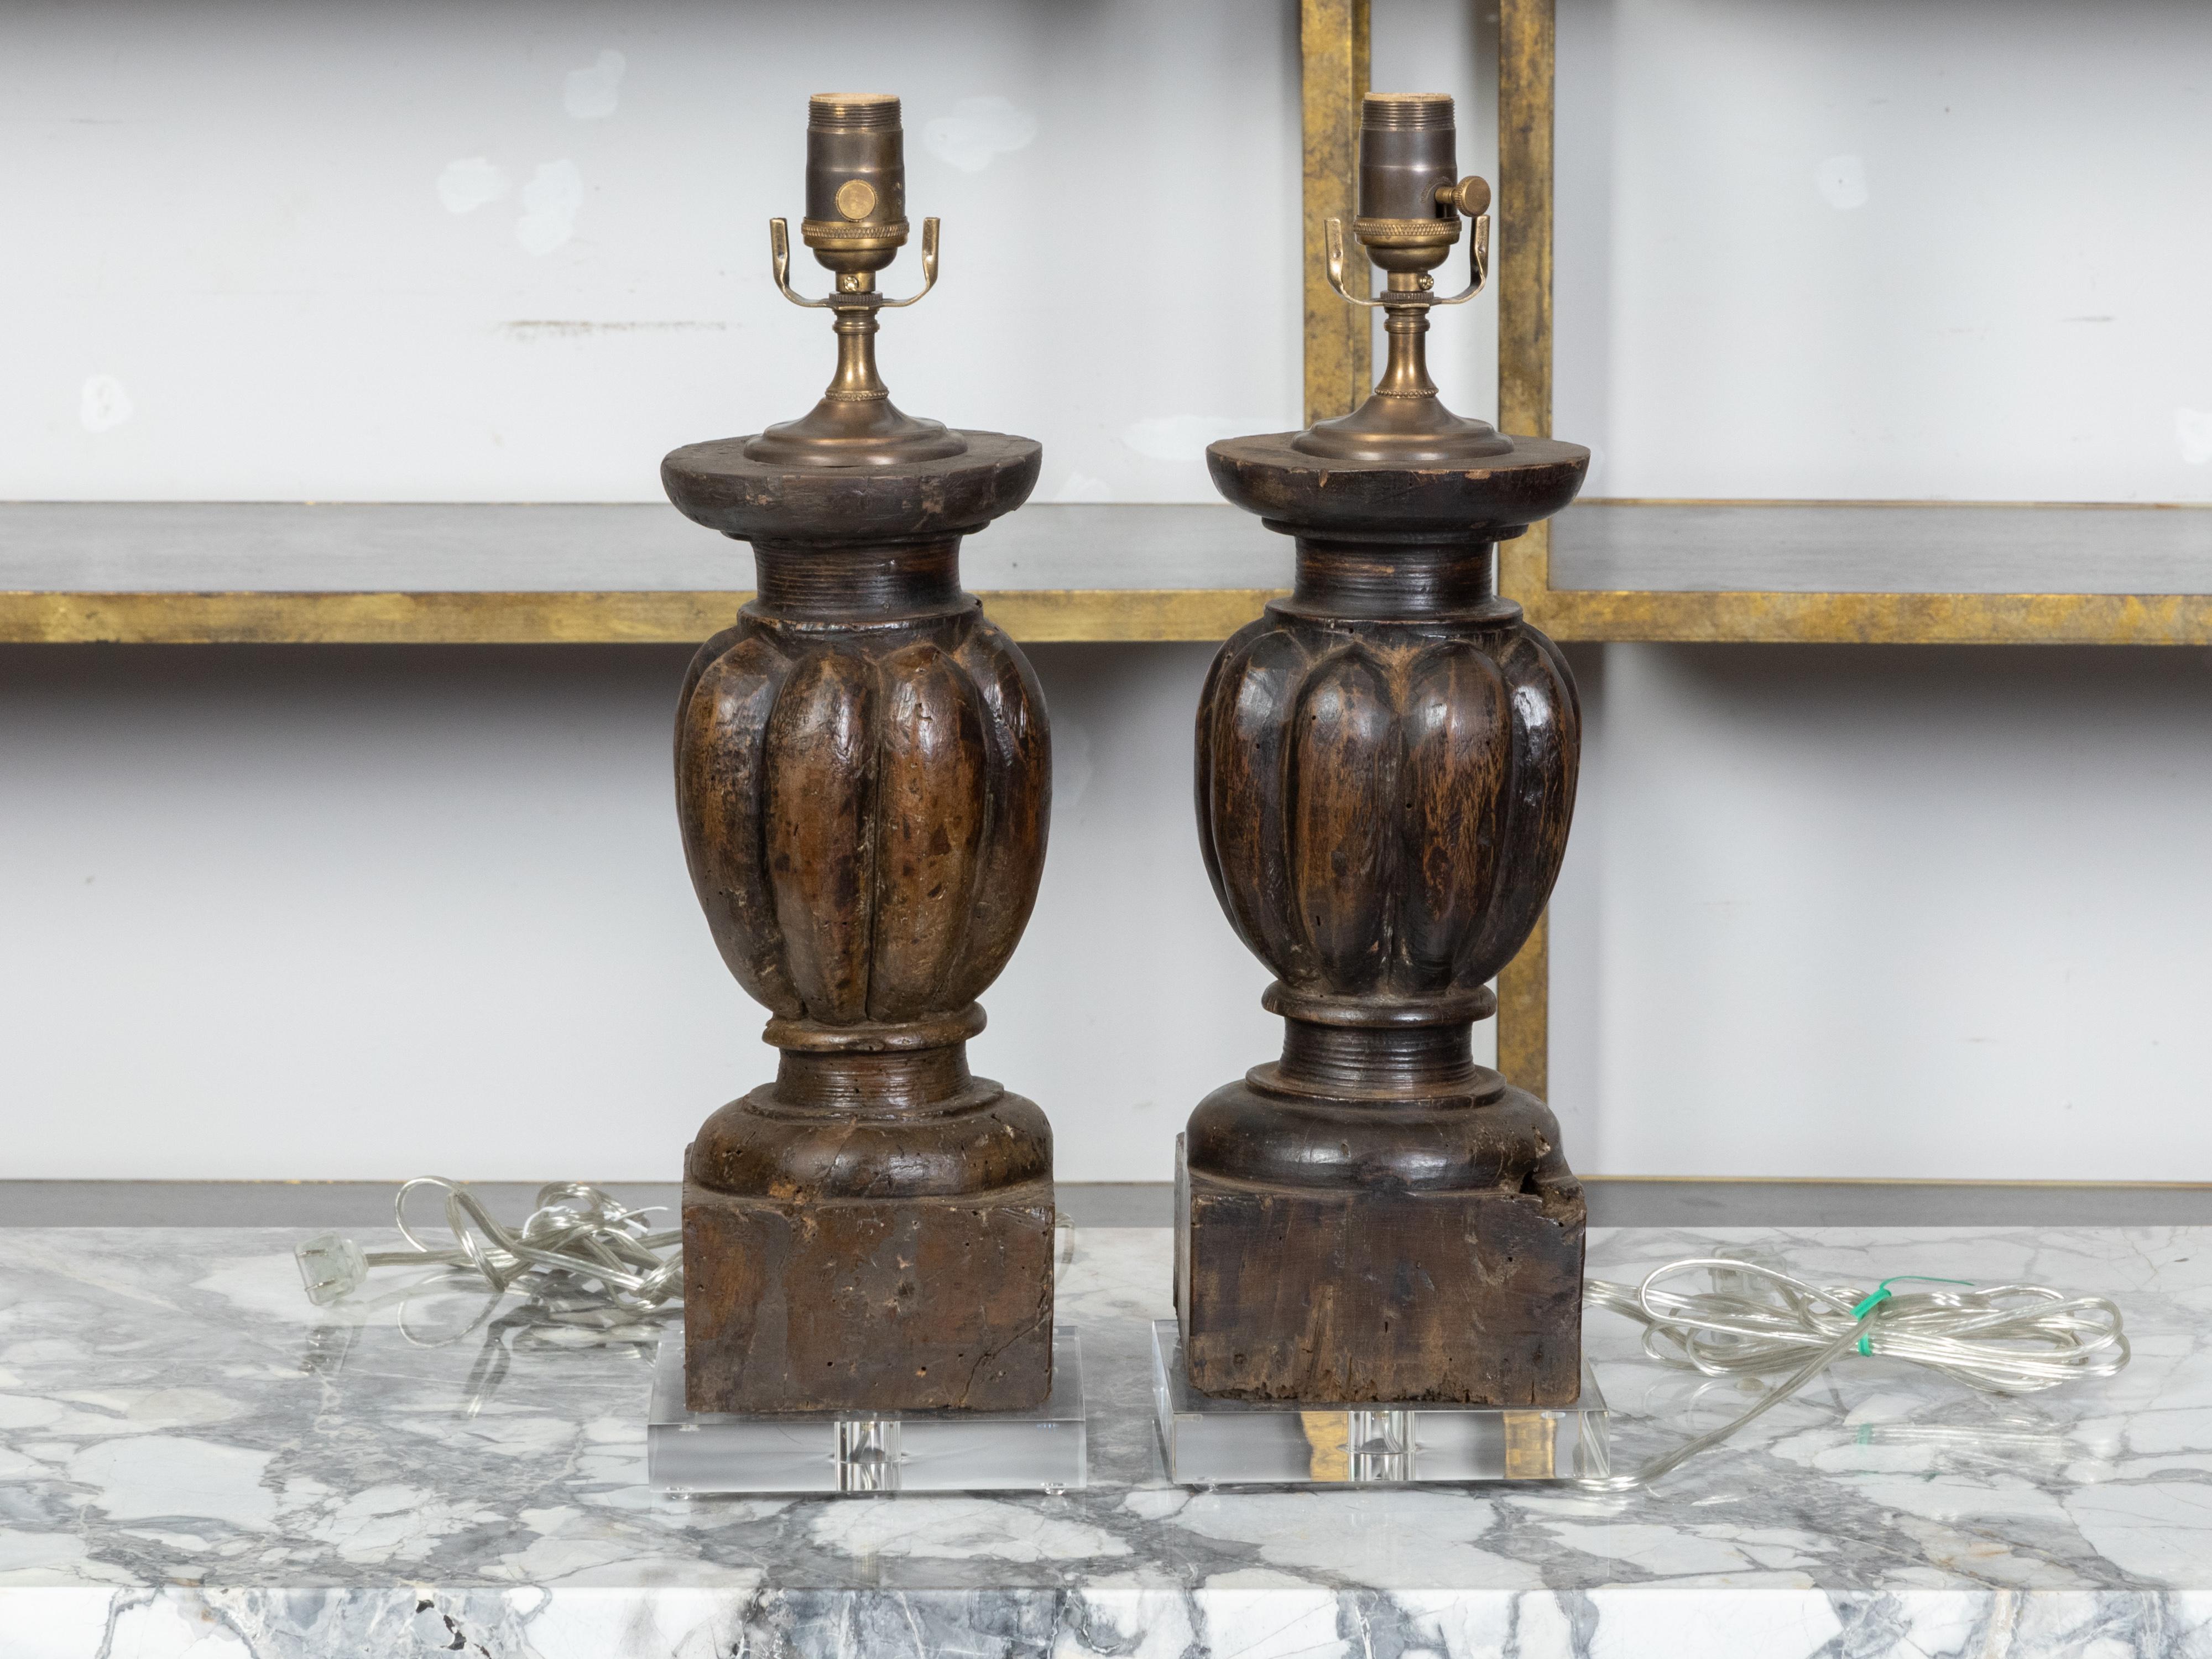 Une paire de fragments de bois sculpté italien du 18ème siècle représentant des balustres avec des motifs de godrons, transformés en lampes de table câblées américaines montées sur des bases carrées en lucite. Créée en Italie dans les dernières